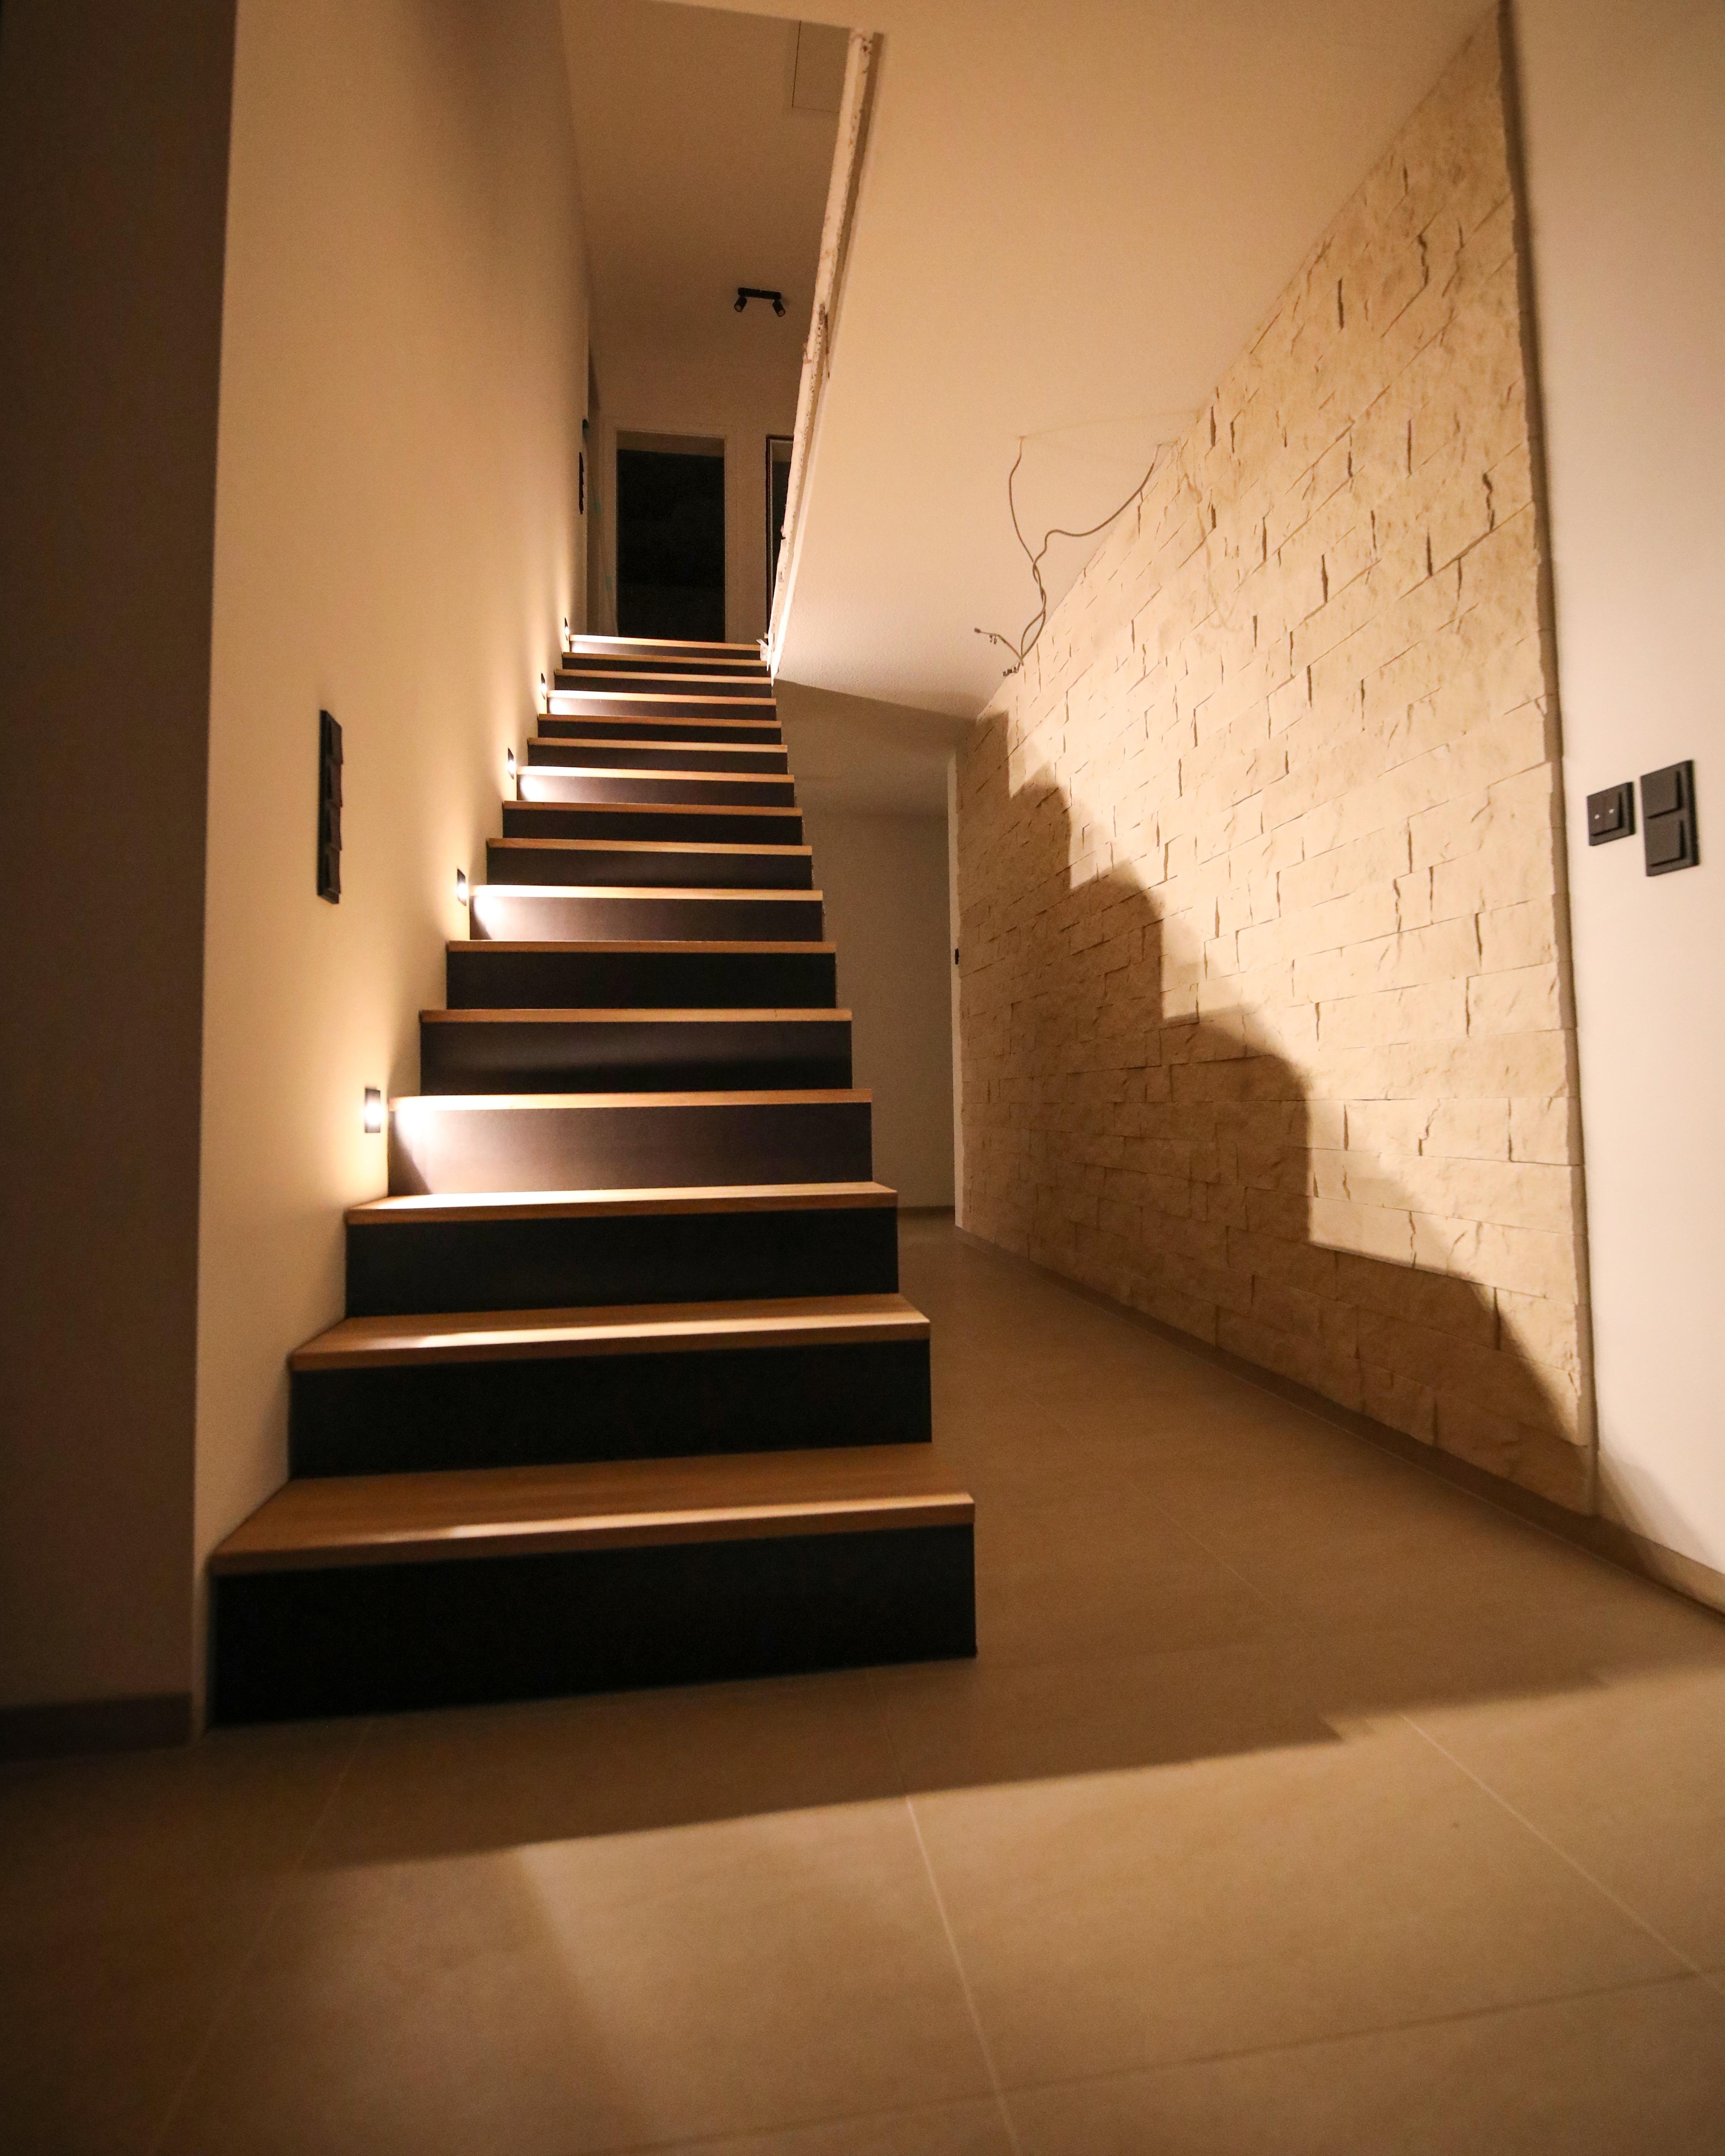 Unsere Treppe am Abend 💫 #treppe #flur #eingangsbereich #spots #industrial 